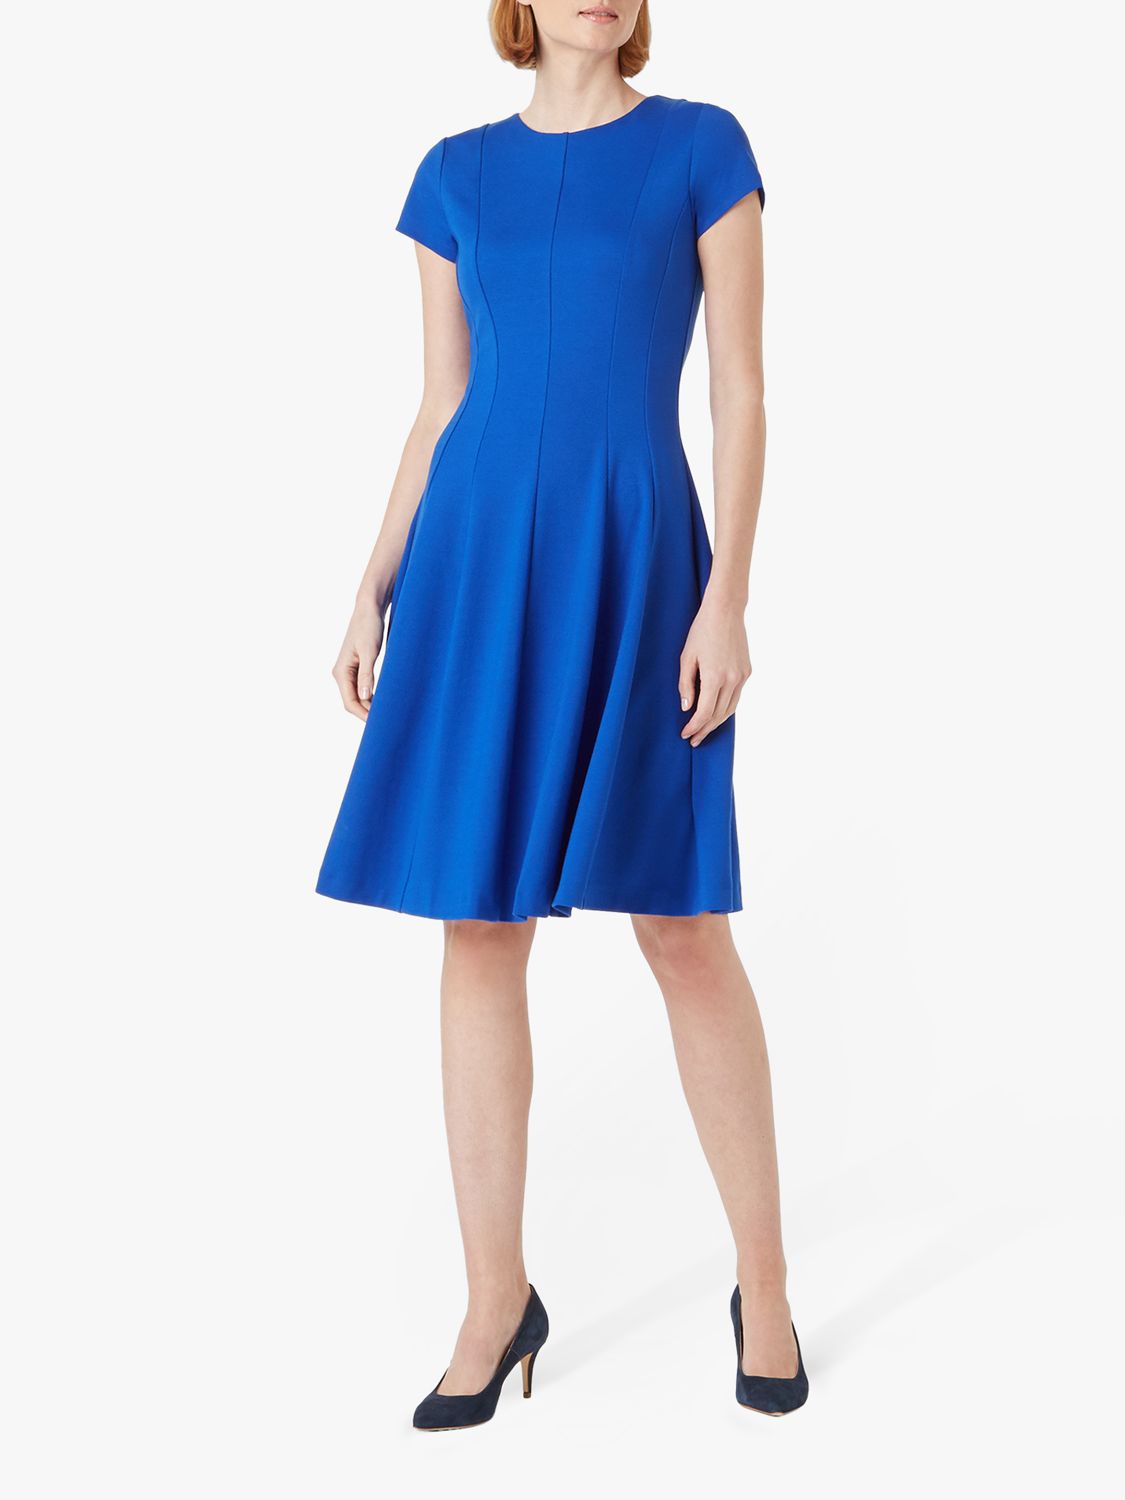 Hobbs Tessa Dress, Blue